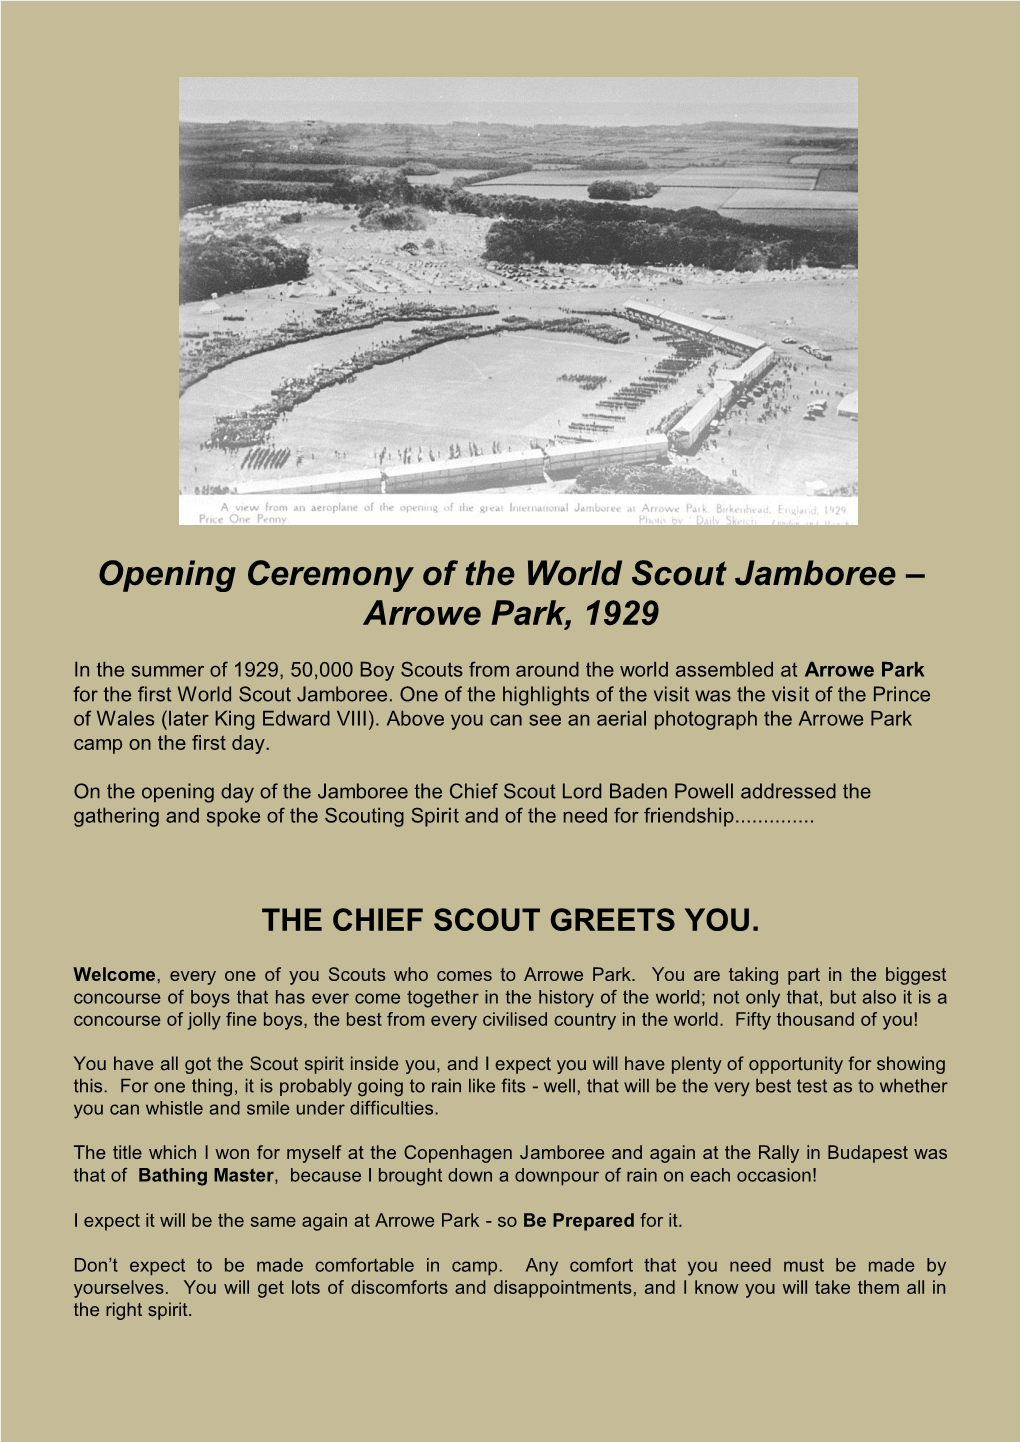 The World Scout Jamboree – Arrowe Park, 1929